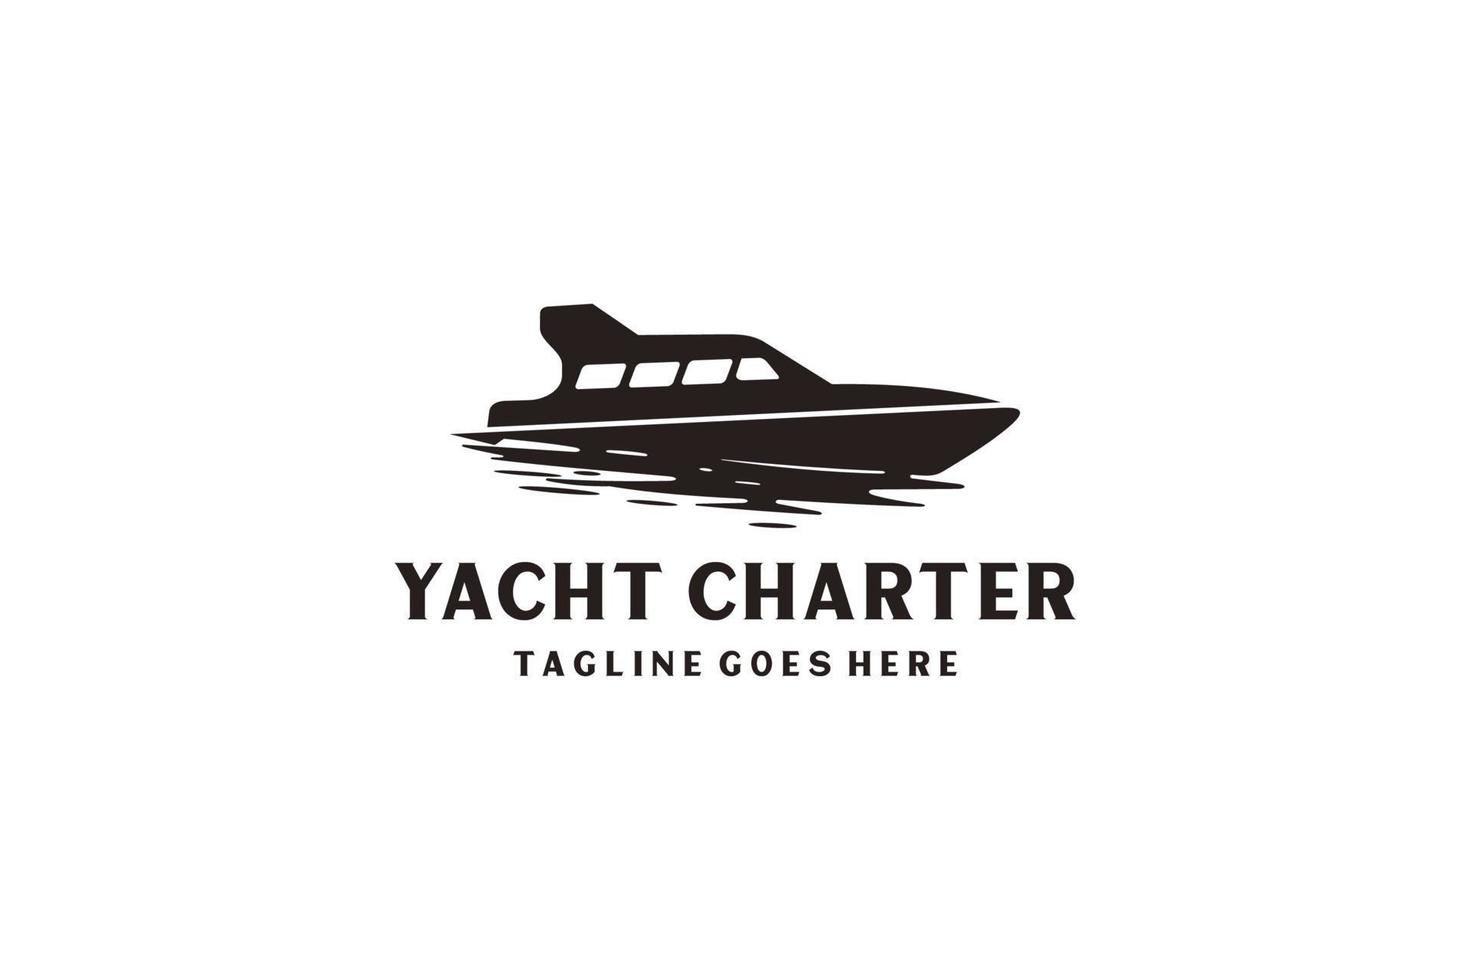 Inspiration für das Design von Yachtkreuzfahrt-Logos mit minimalistischem Kunststil. vektor